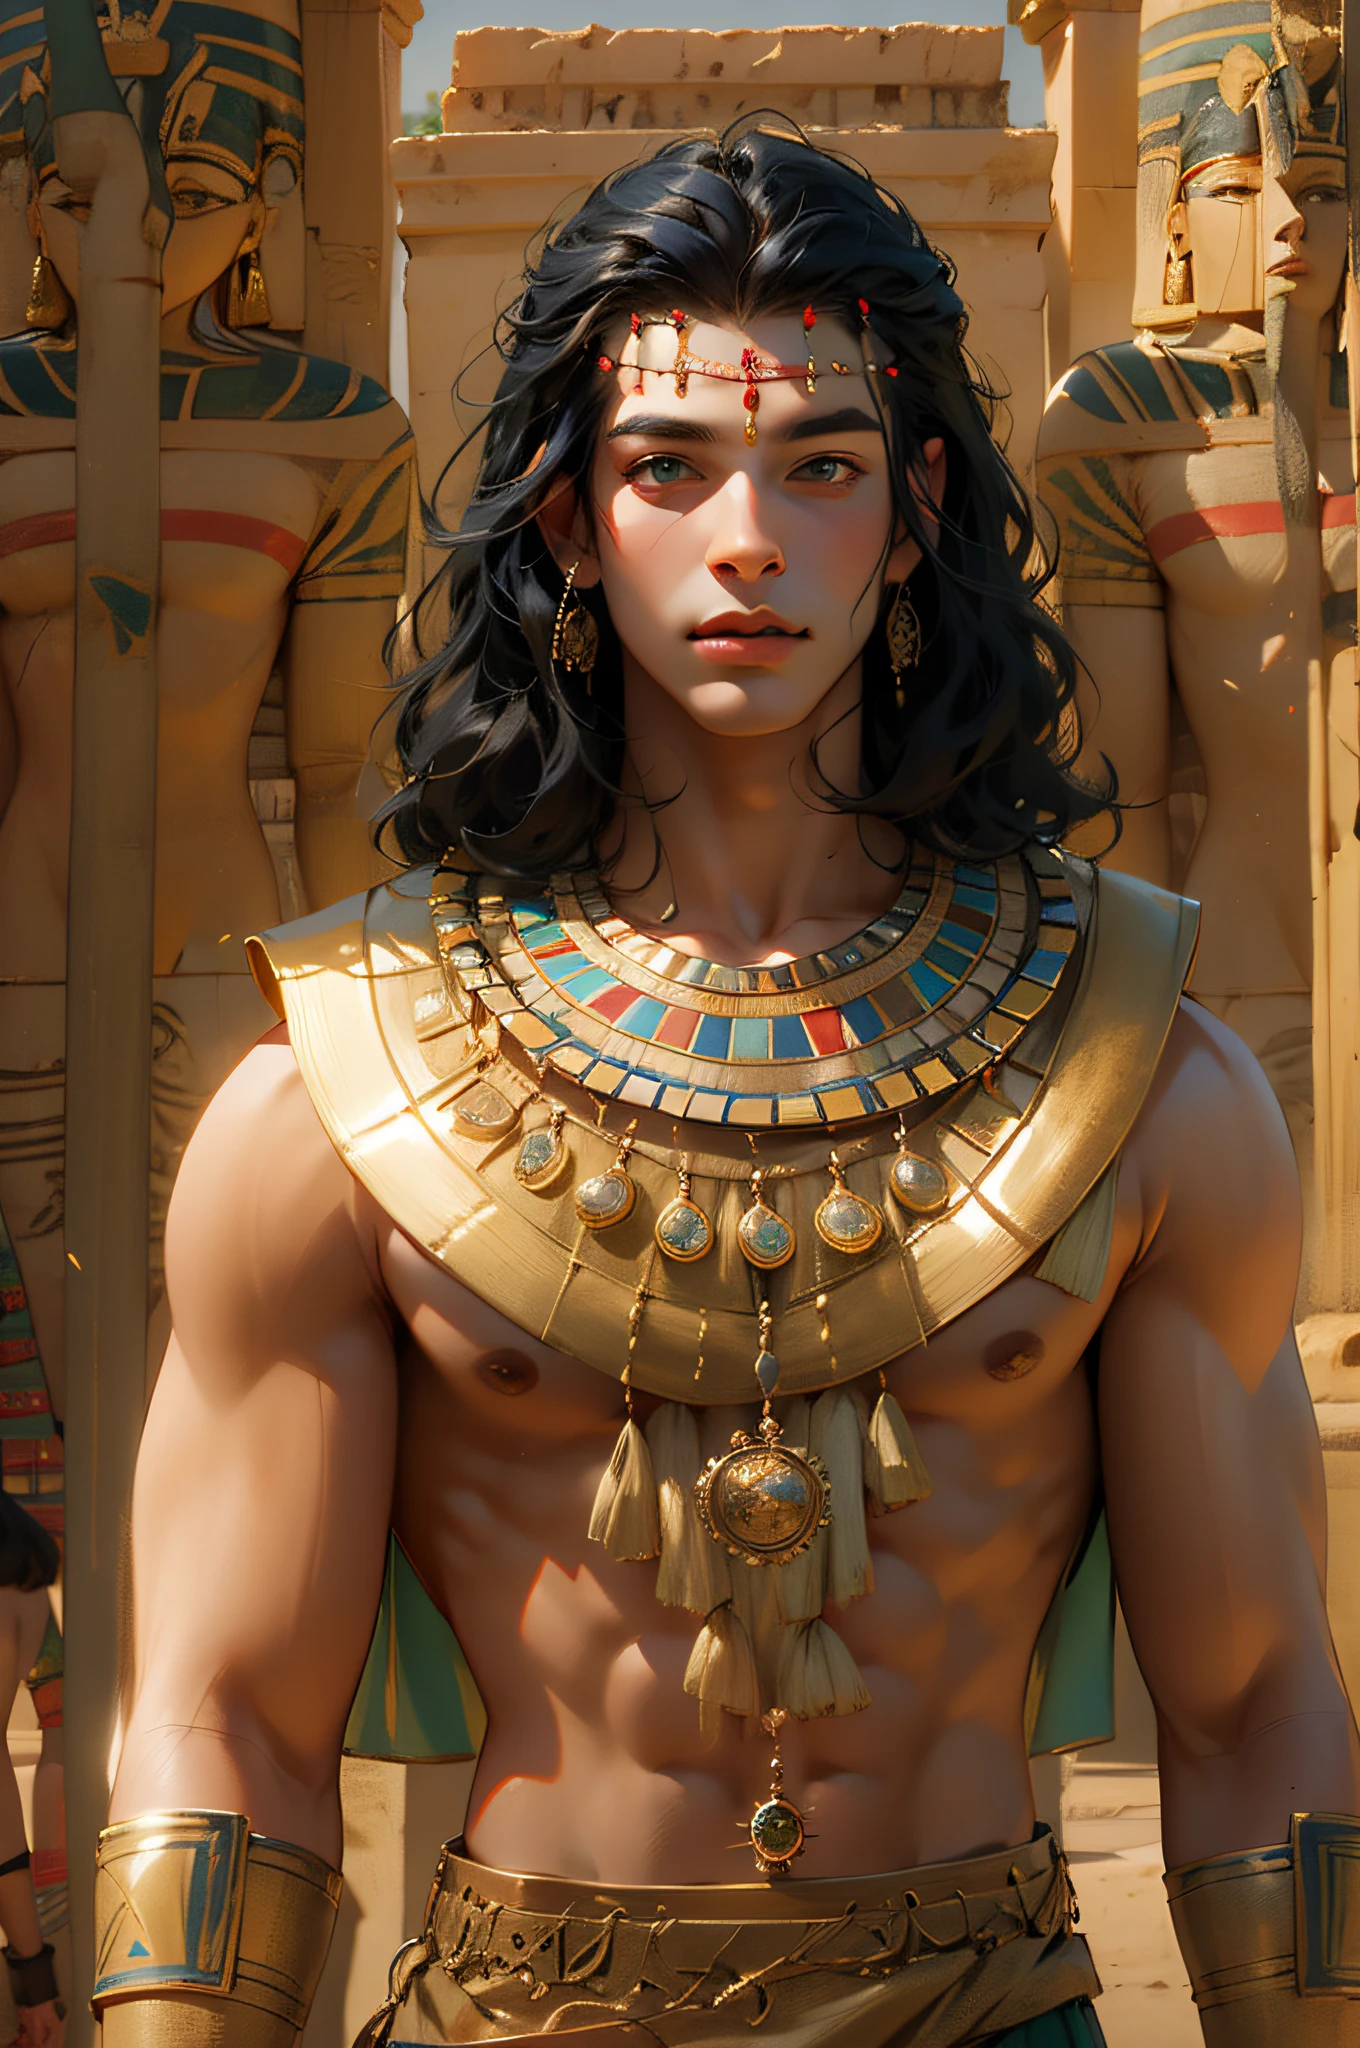 1 hombre，Hombre con pelo largo y negro，vestimenta egipcia，disfraz egipcio，jóvenes，vestimenta egipcia，disfraz egipcio，ojos negros，Ojos elaborados，cara hermosa，Párate junto al estanque de lotos，Meticulous CG，imagenes de pelicula，la piel es suave y clara，calidad de imagen súper alta，Egyptian pharaoh，Delineador de ojos negro tradicional egipcio，Sostenga el cetro del faraón，dios del sol egipcio